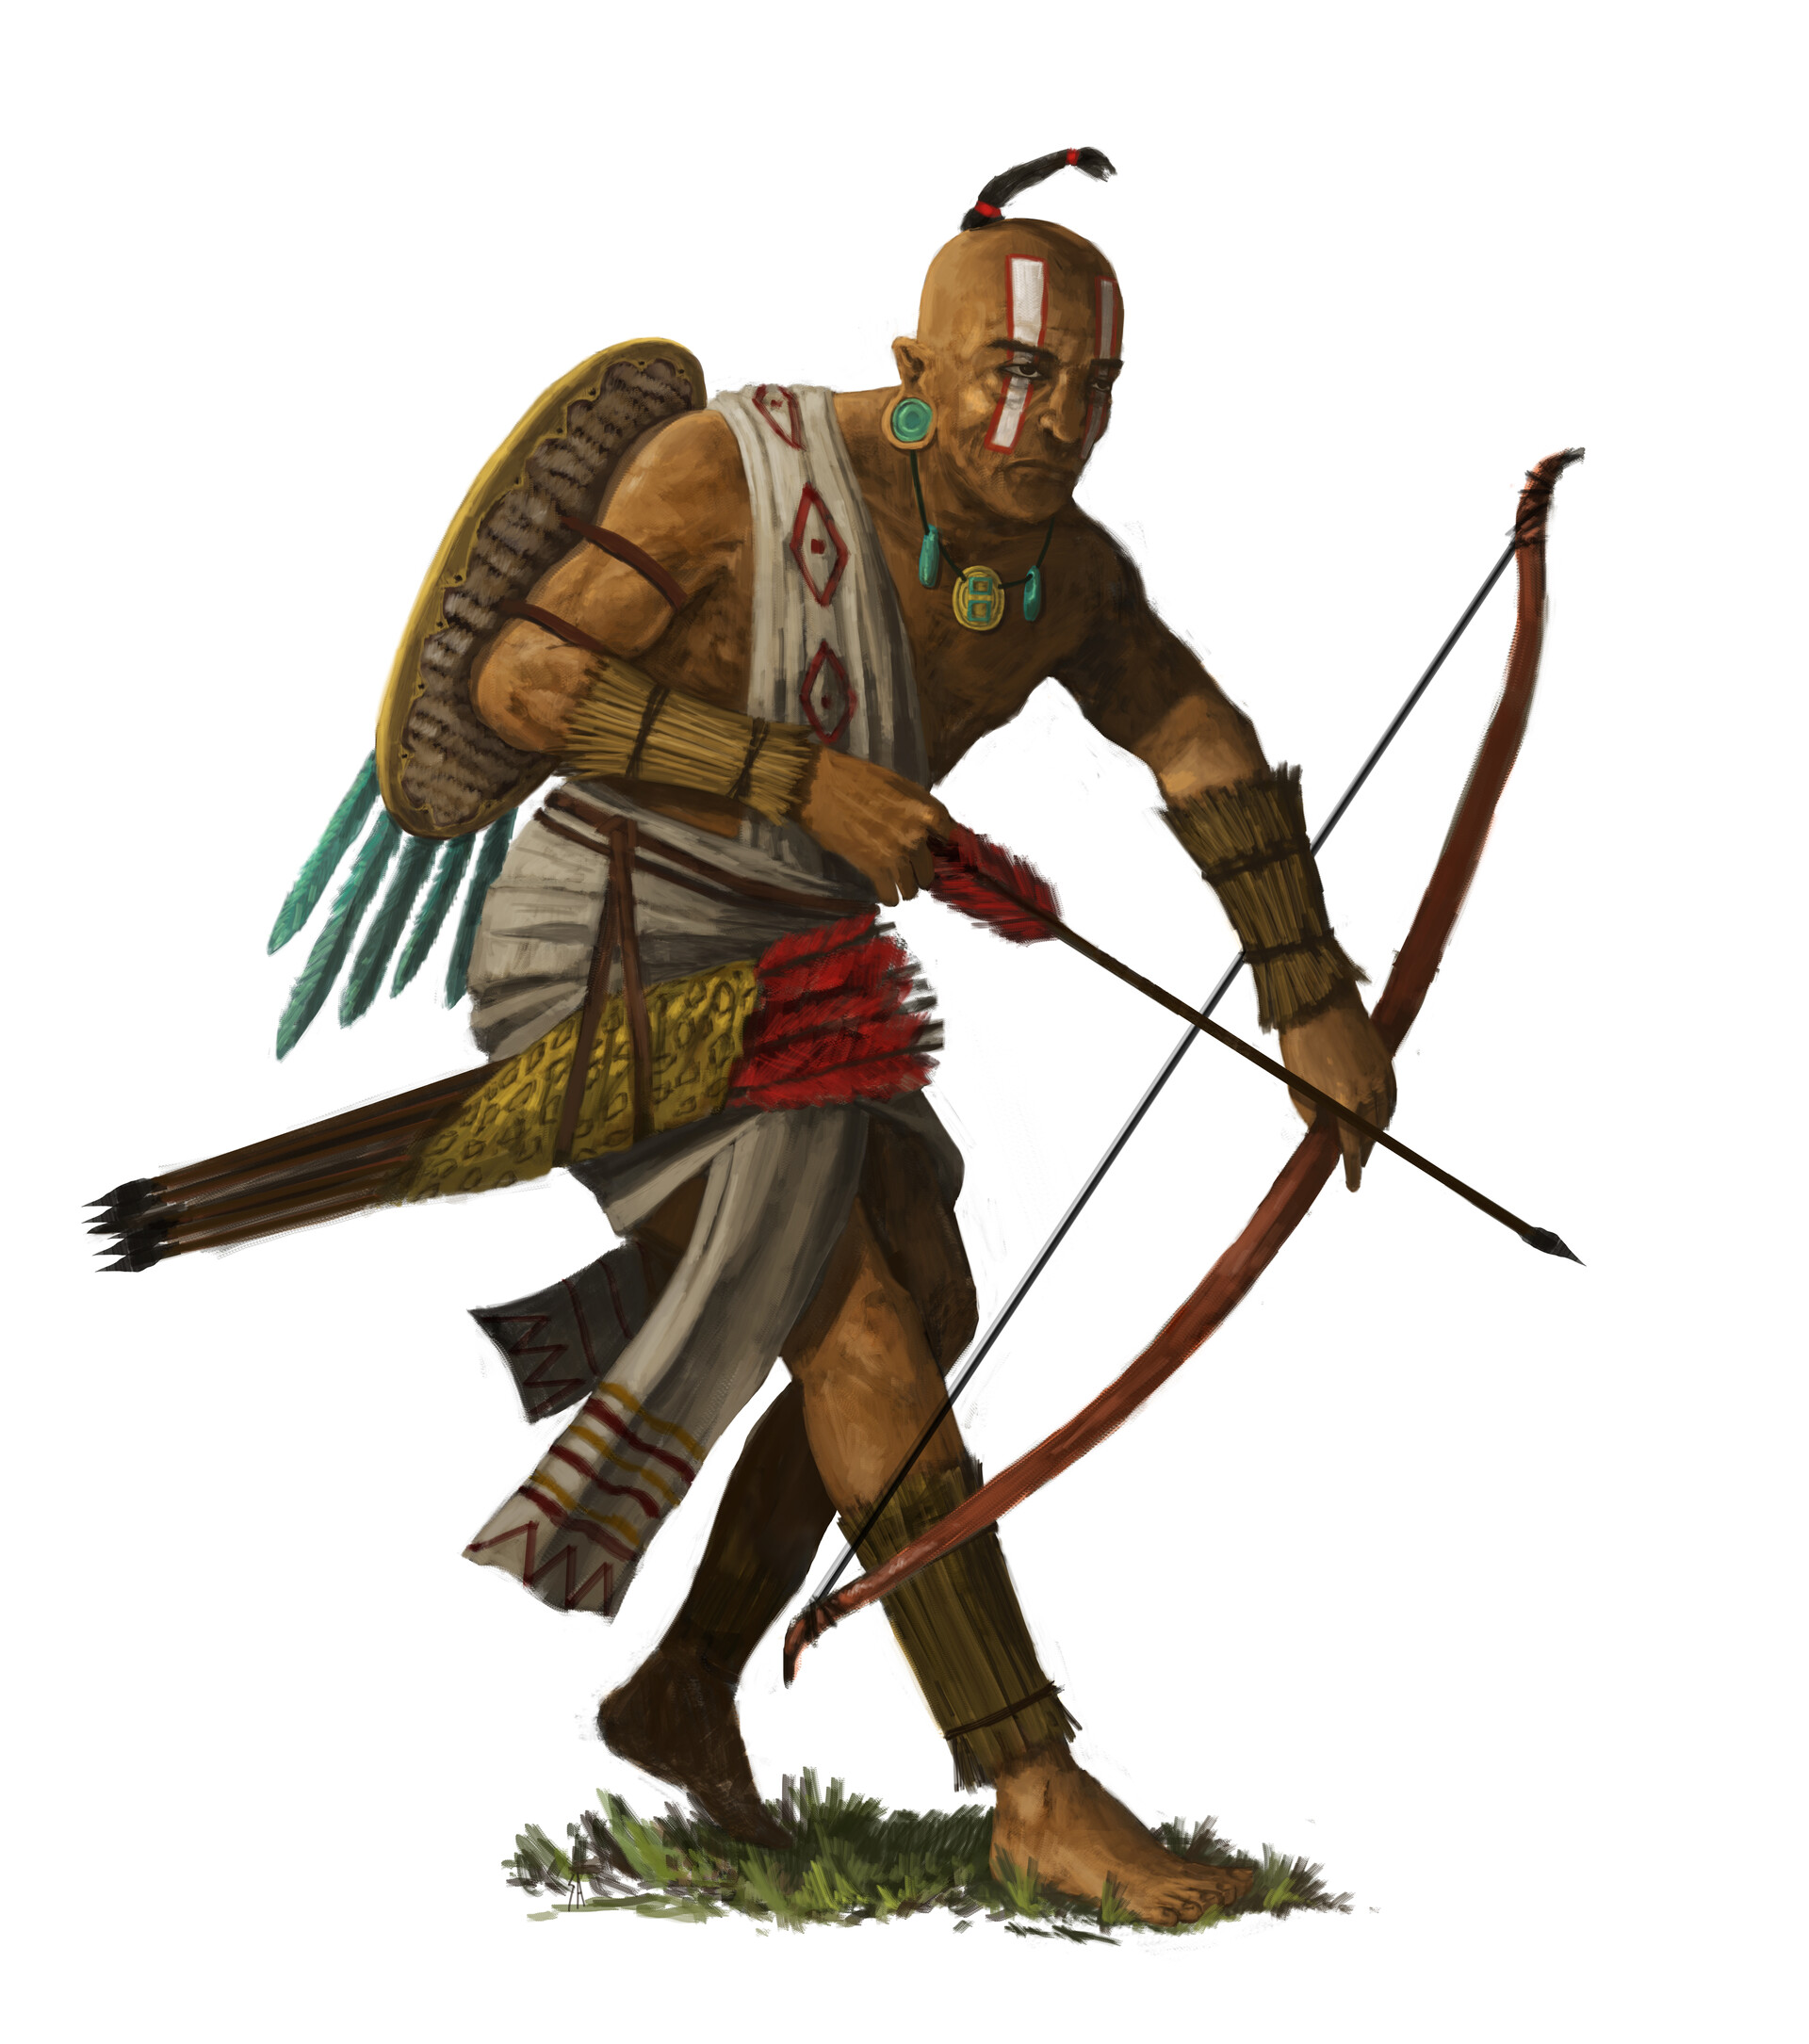 Warrior tribes